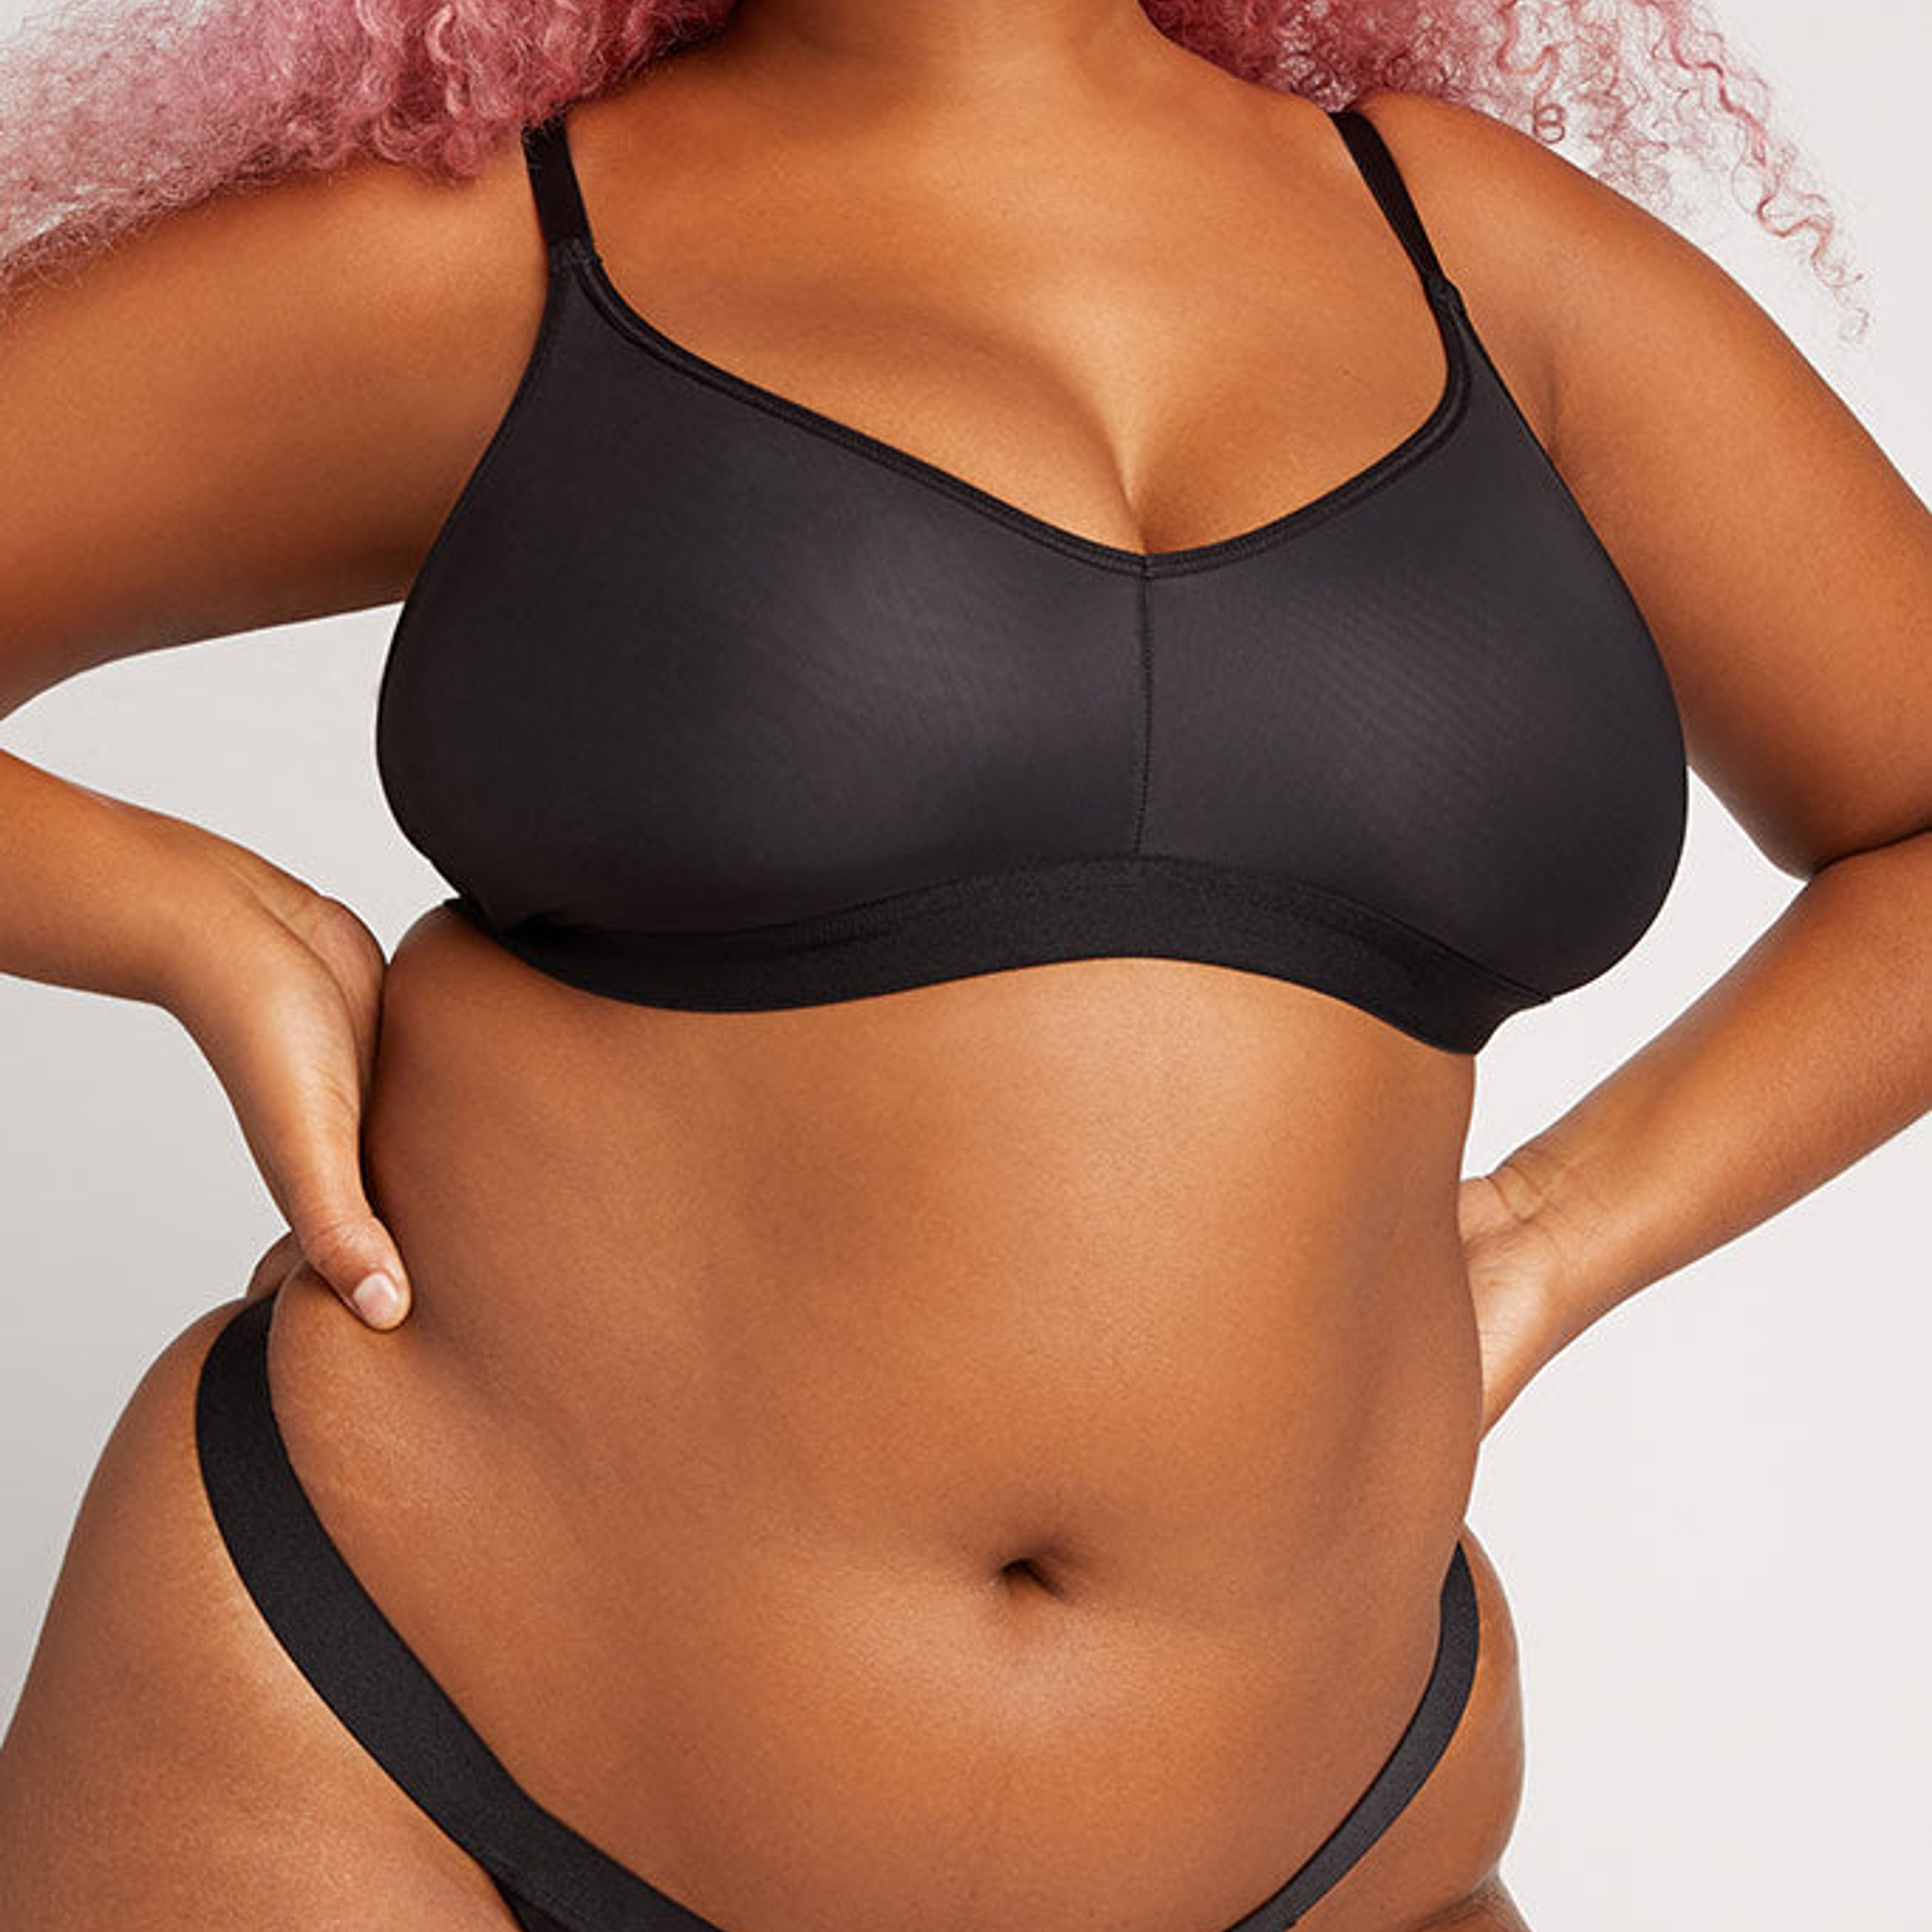 Silky Brief in Black  Women's Silky Bikini Briefs - Negative Underwea –  Negative Underwear